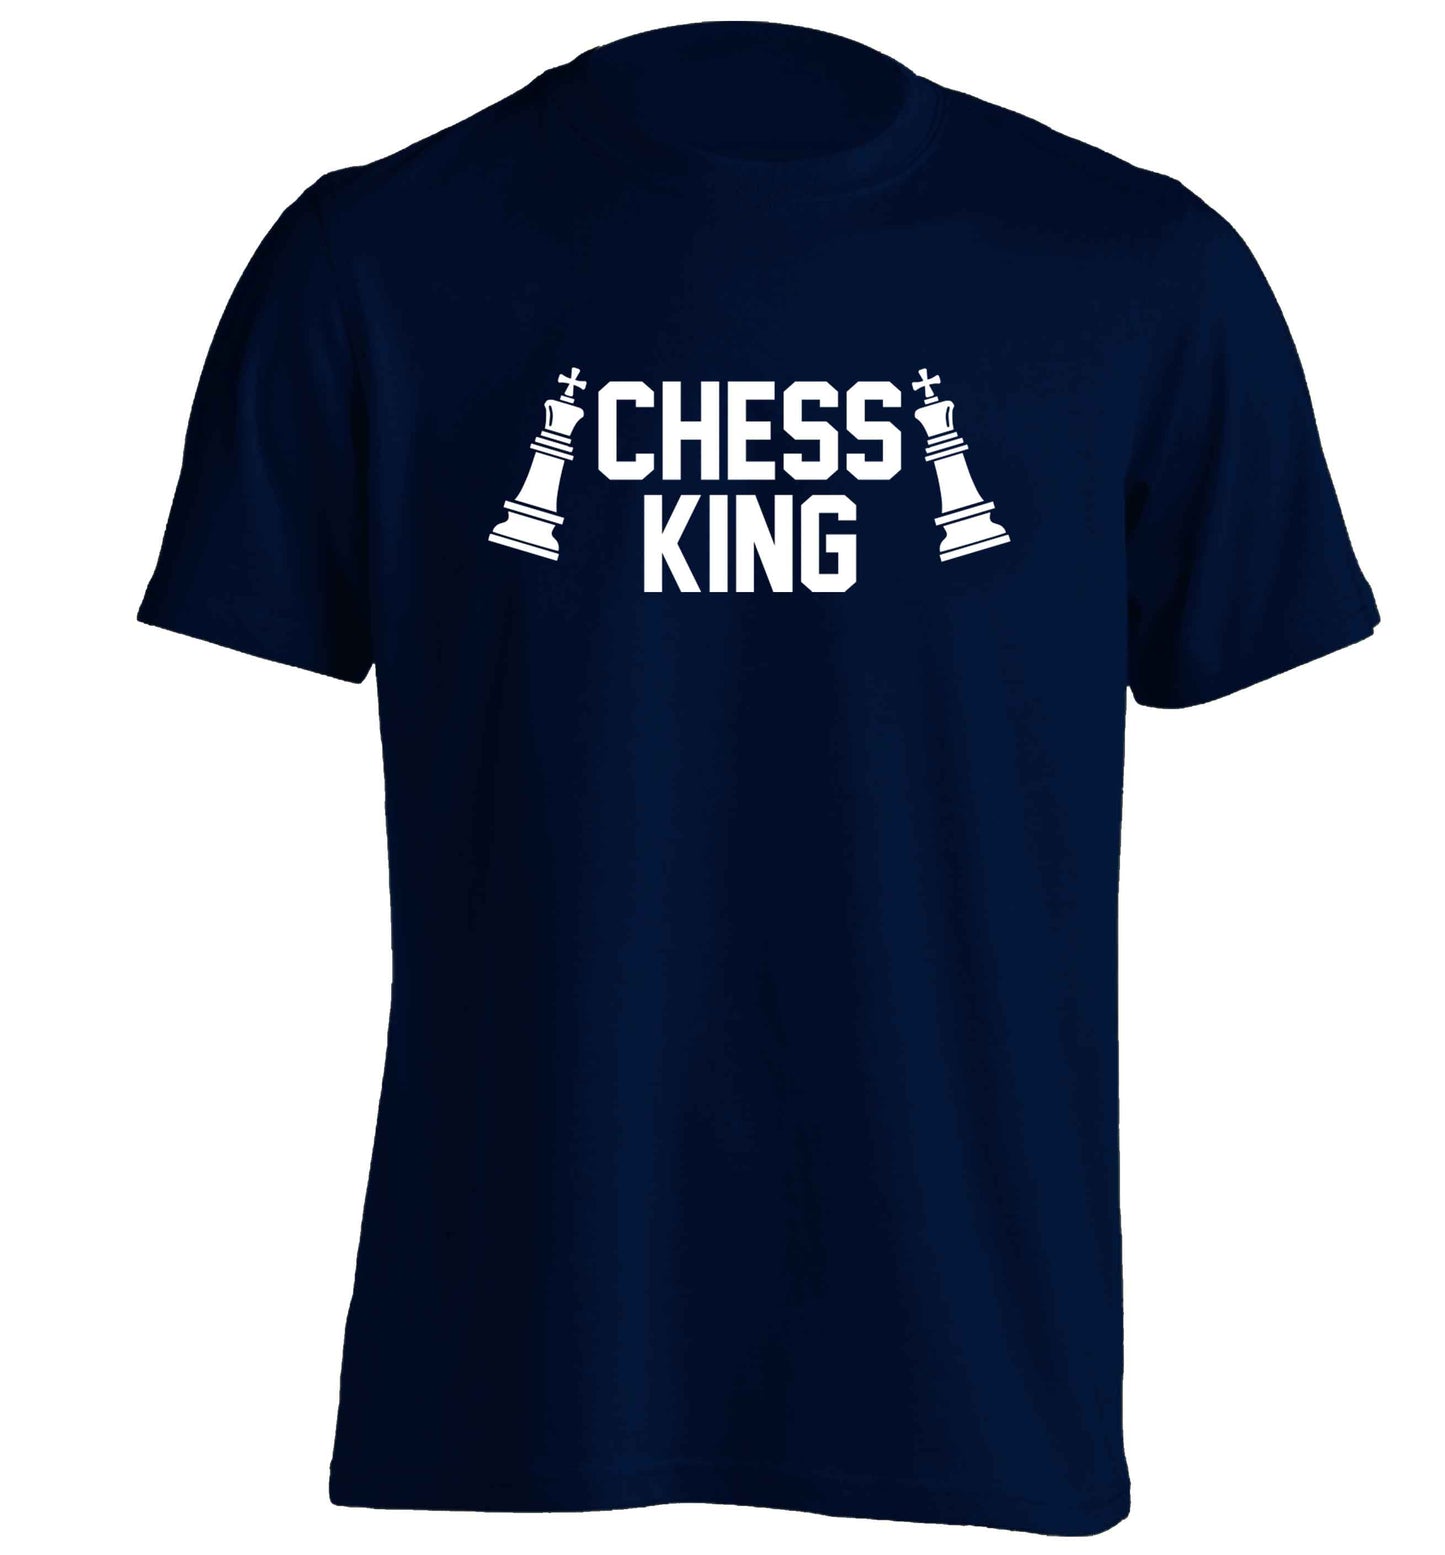 Chess king adults unisex navy Tshirt 2XL